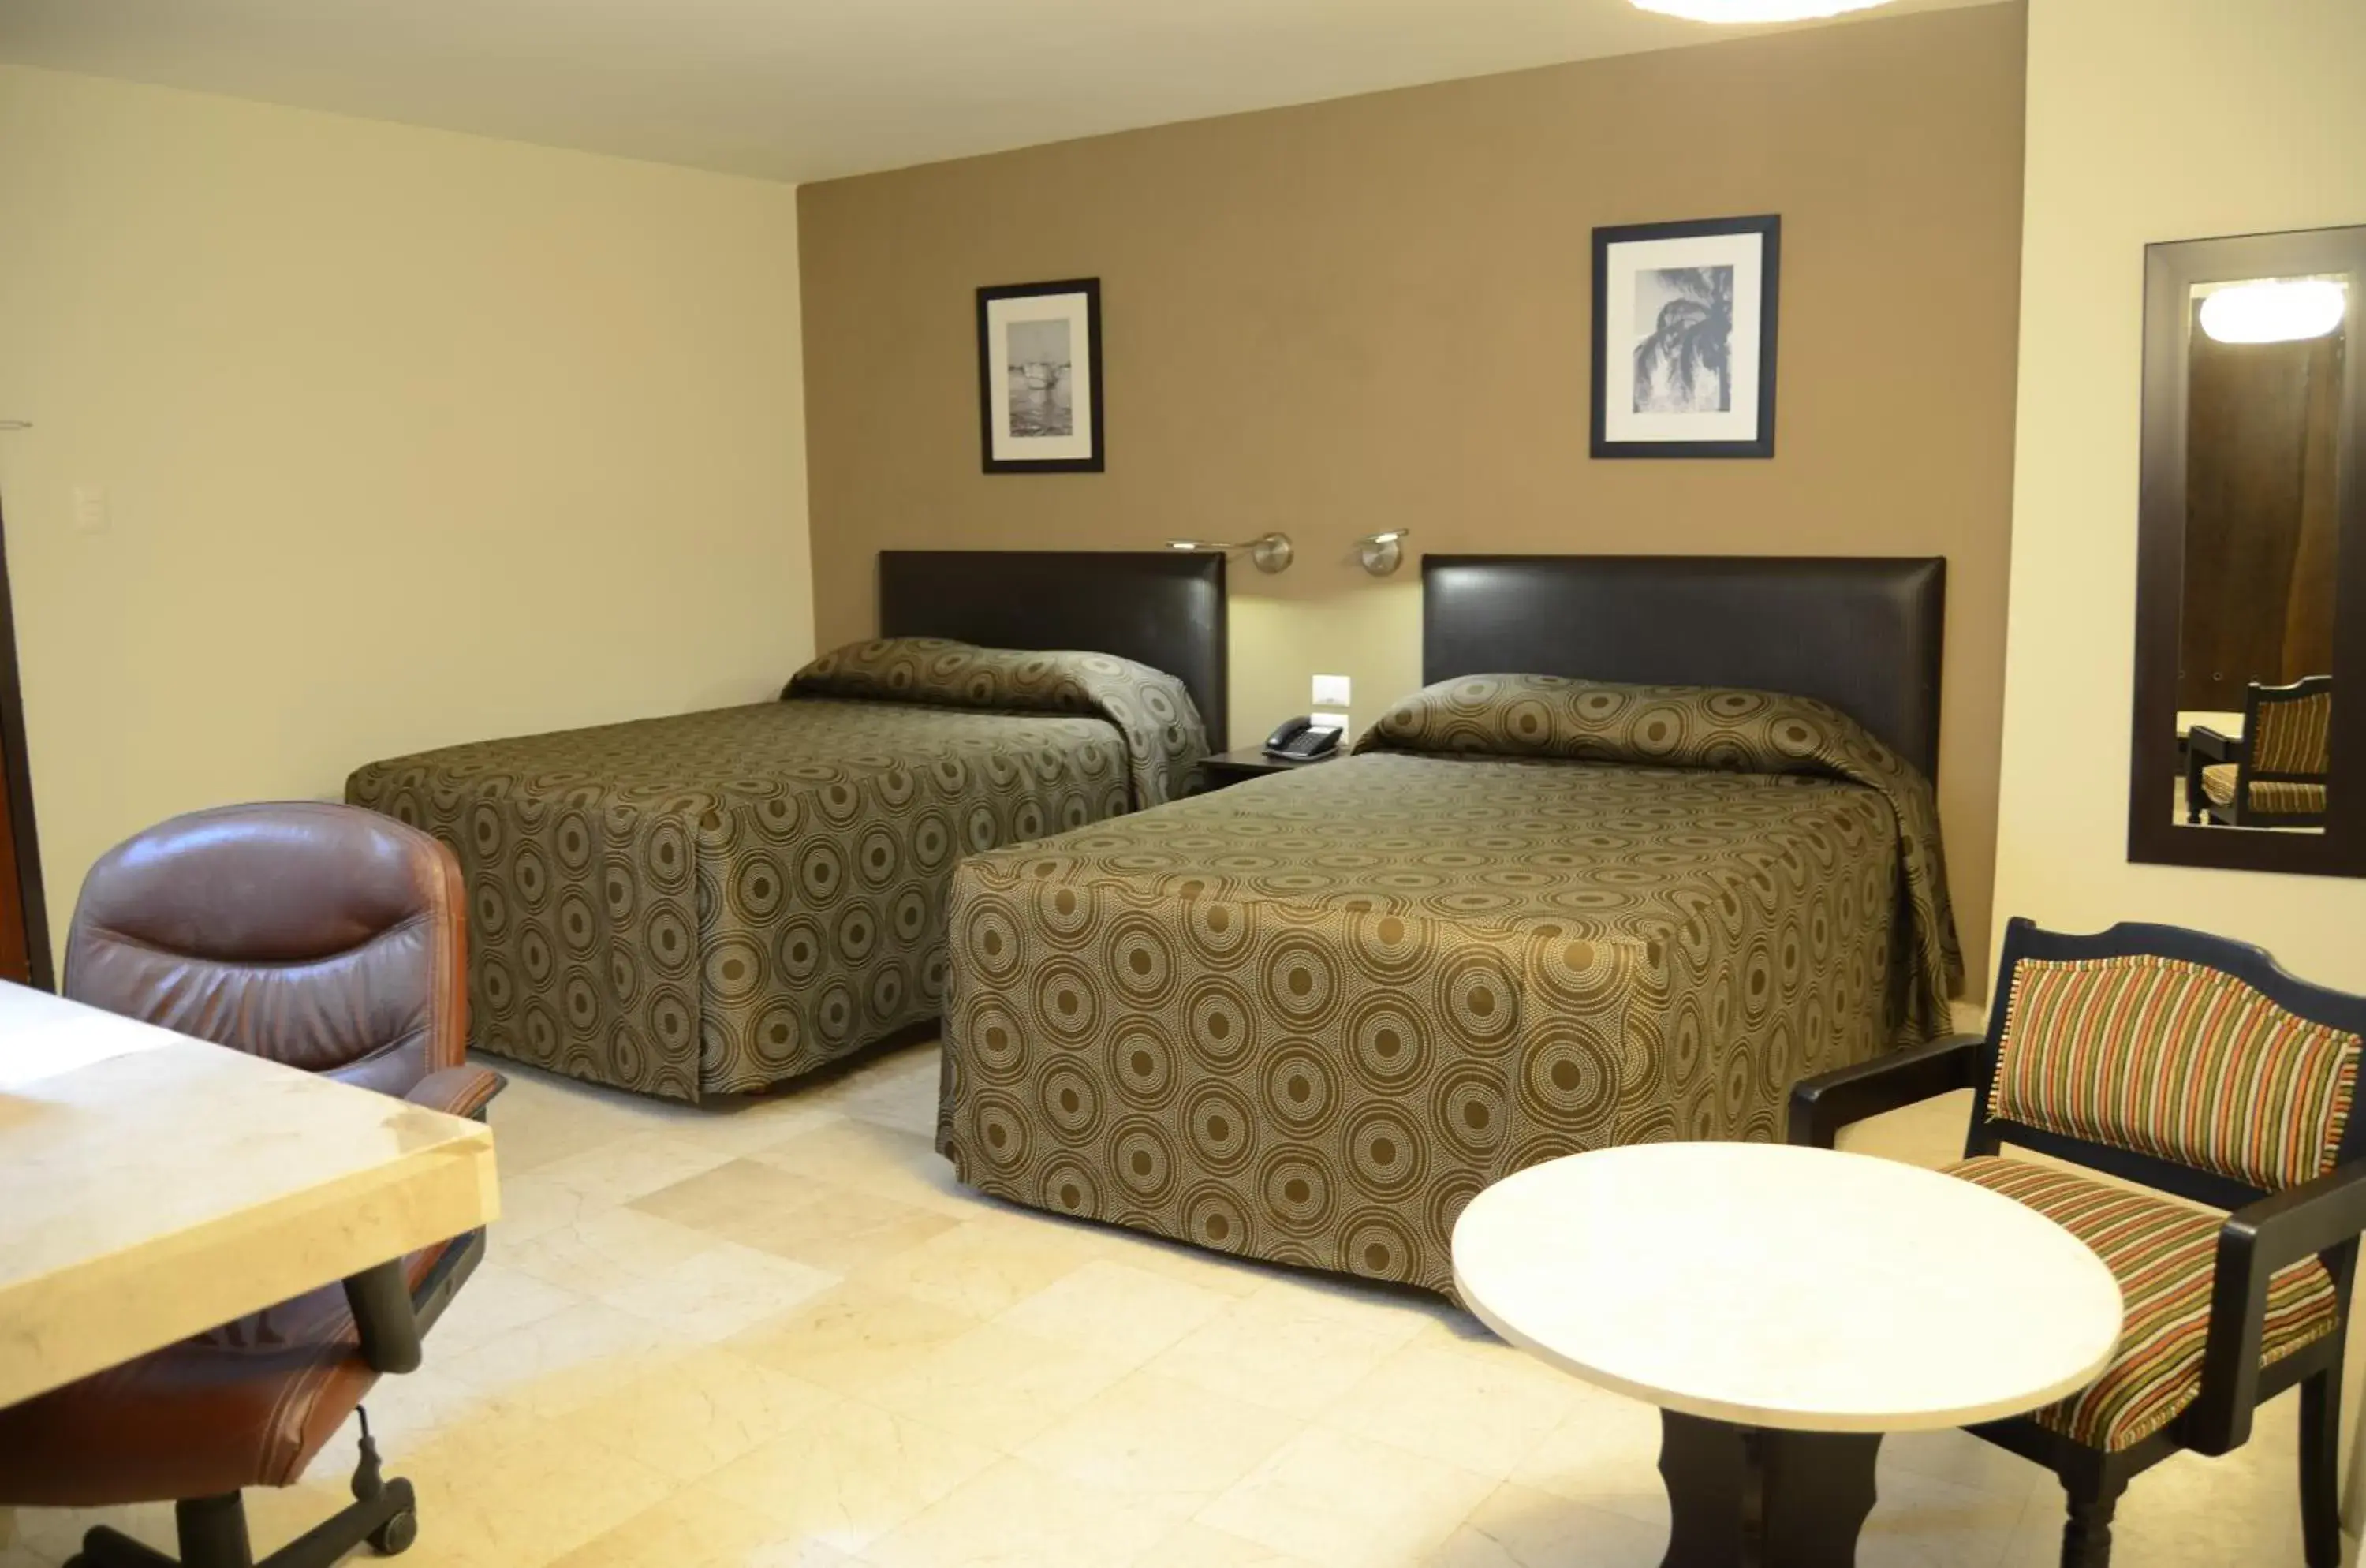 Bed, Room Photo in Hotel Mar y Tierra